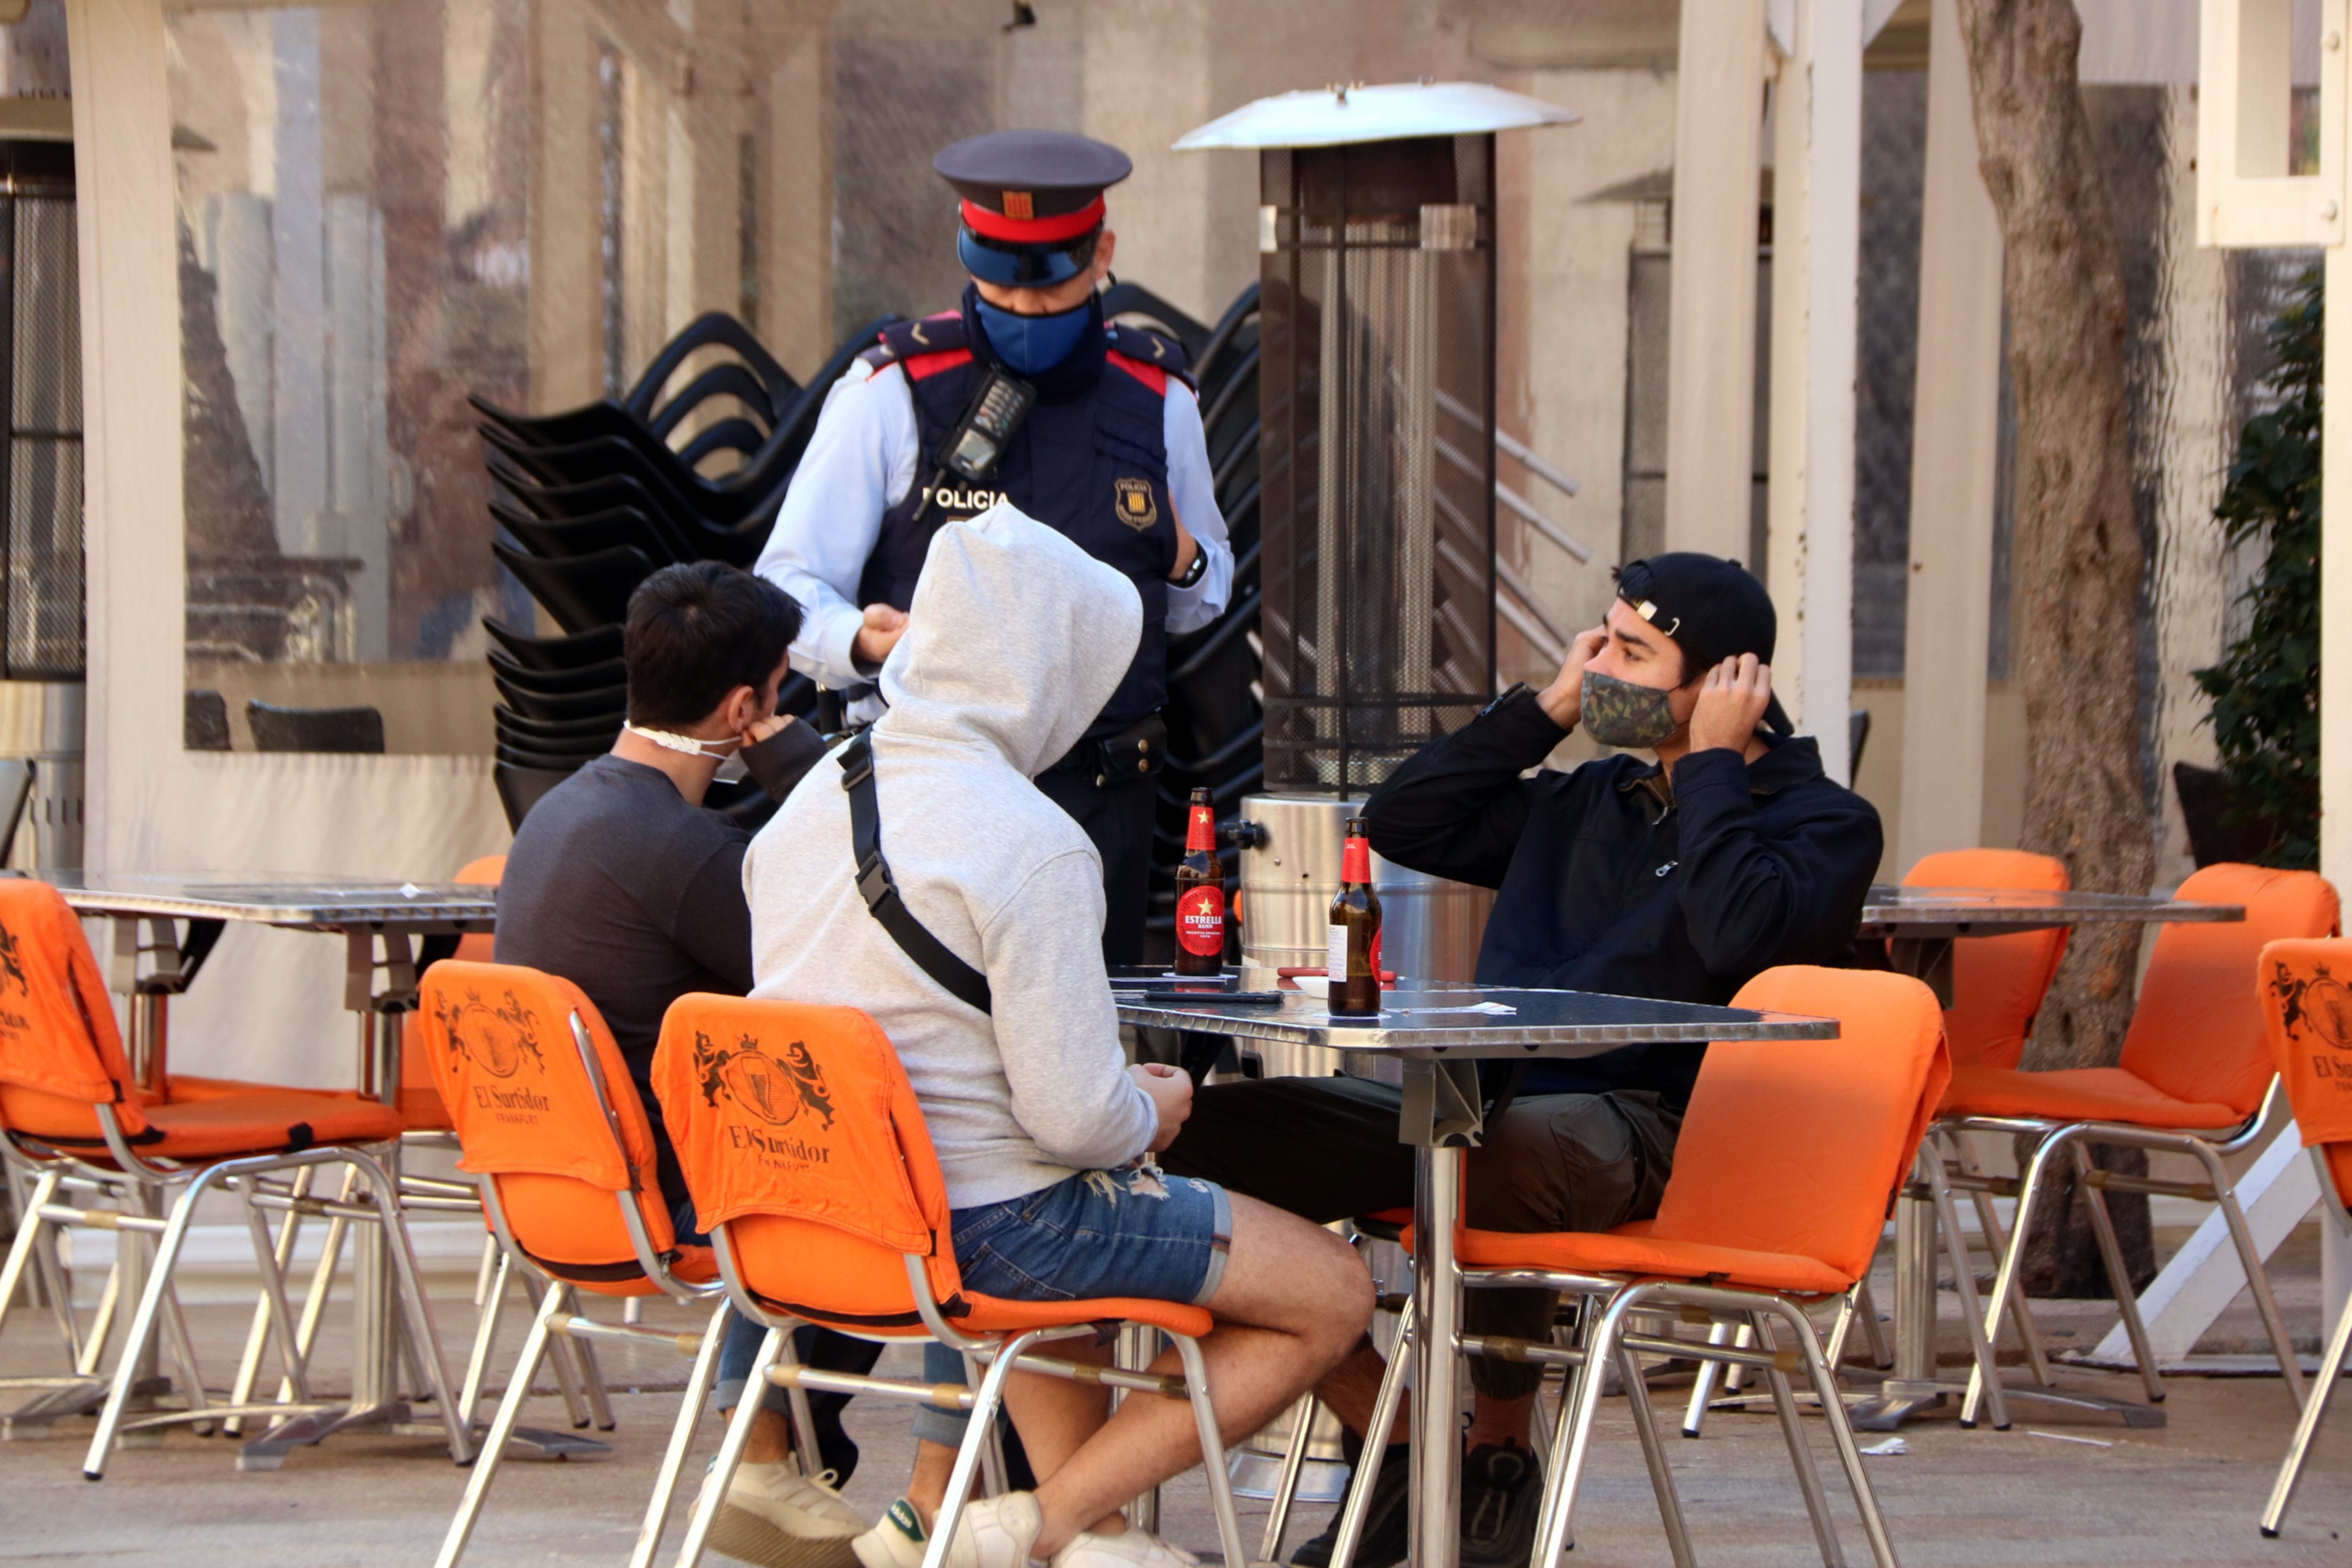 La Policía de Girona pone 16 denuncias a dos bares por saltarse las medidas anti-Covid